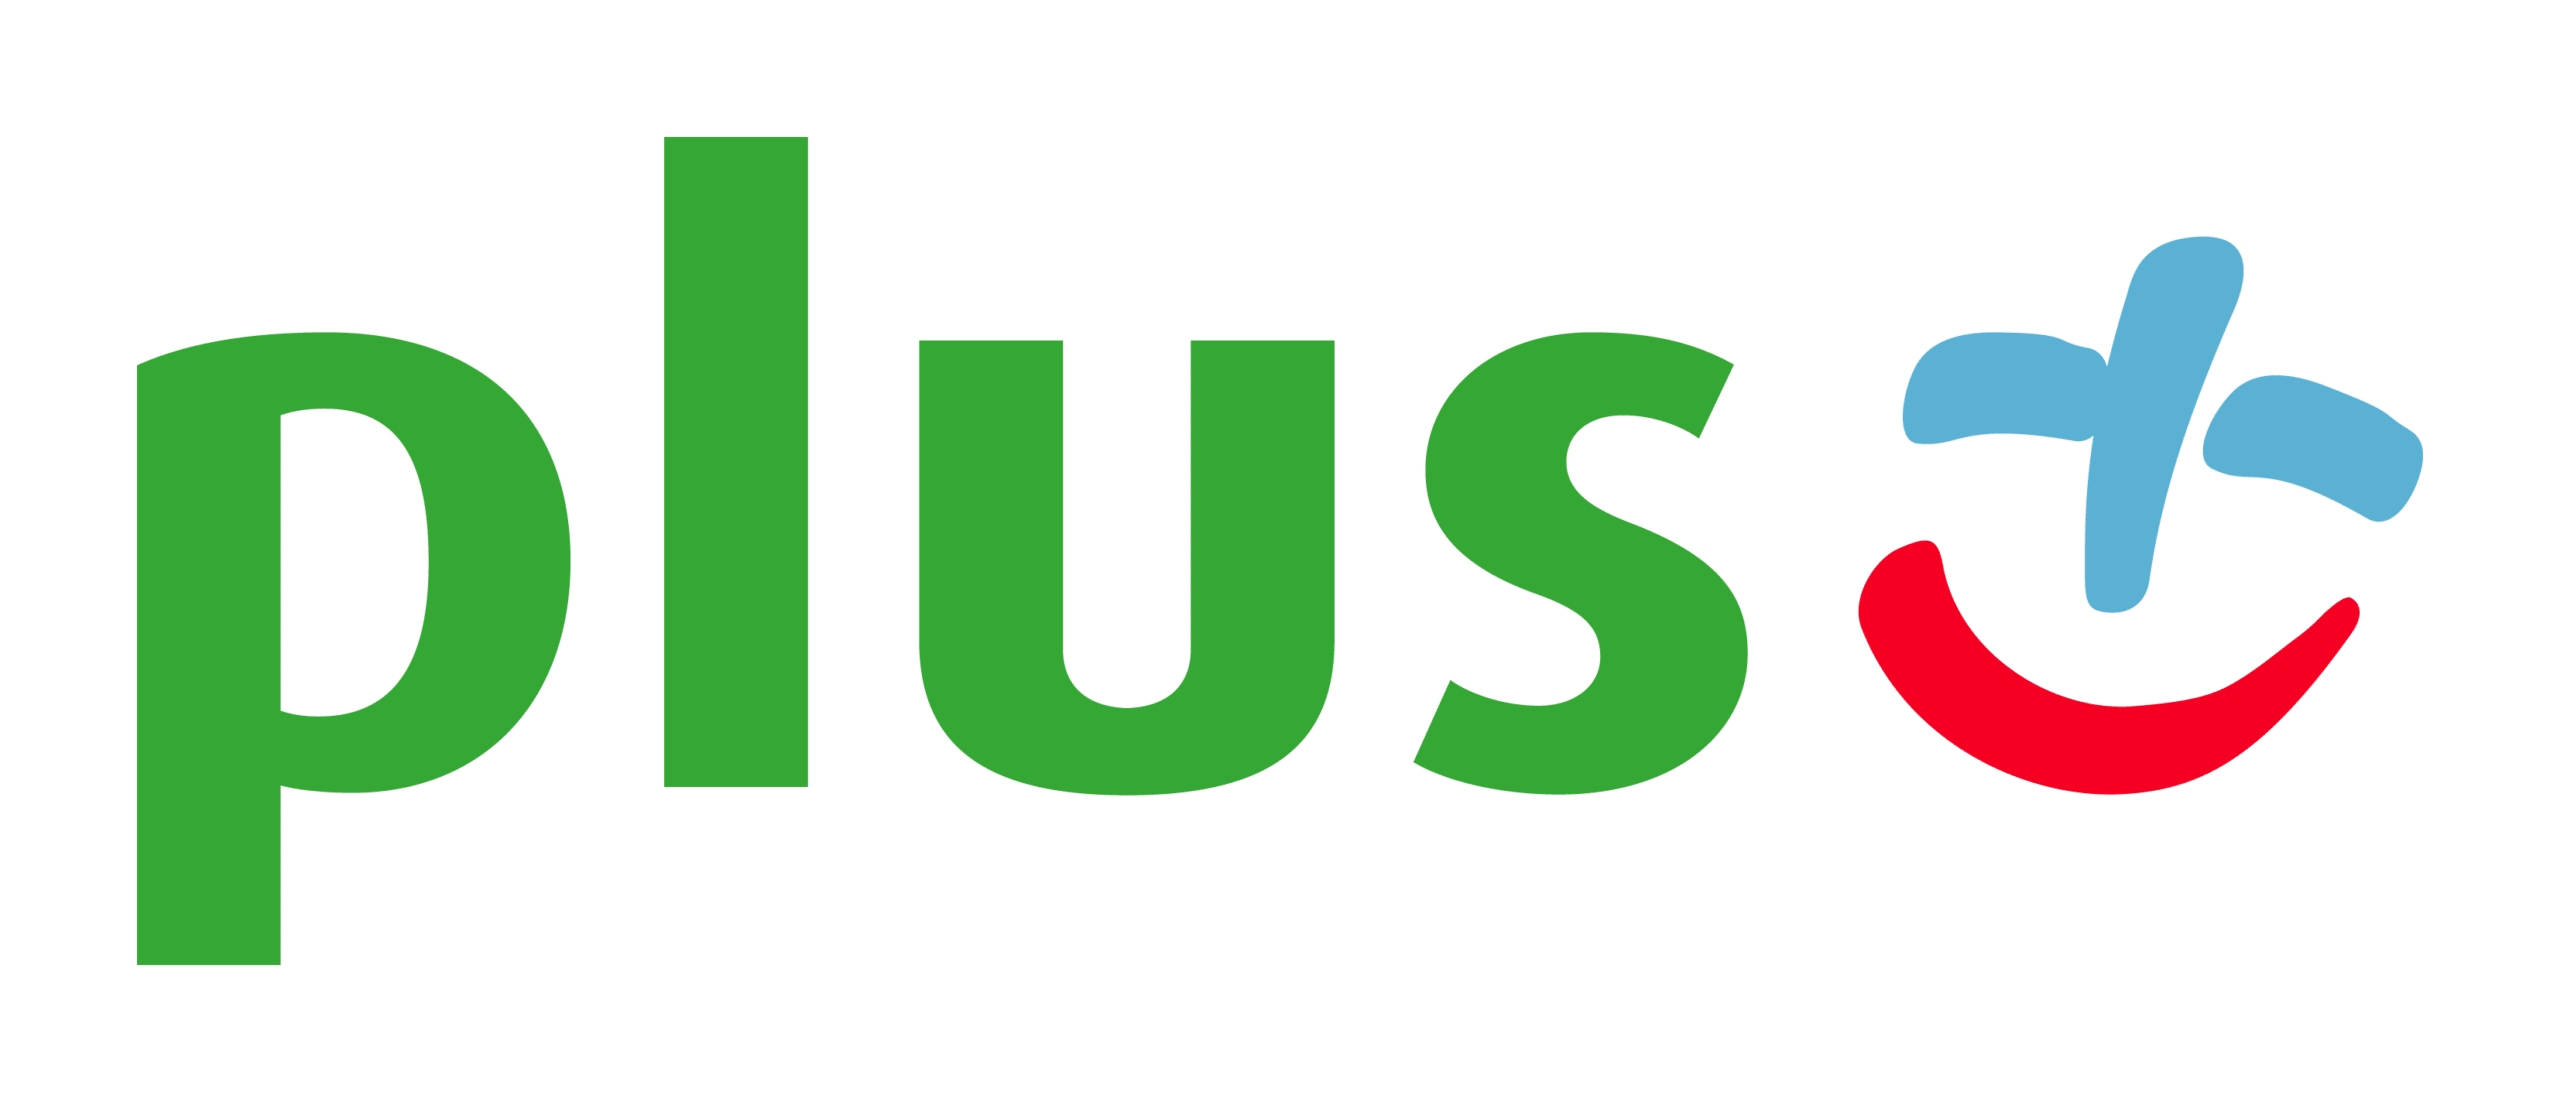 logo Plusa